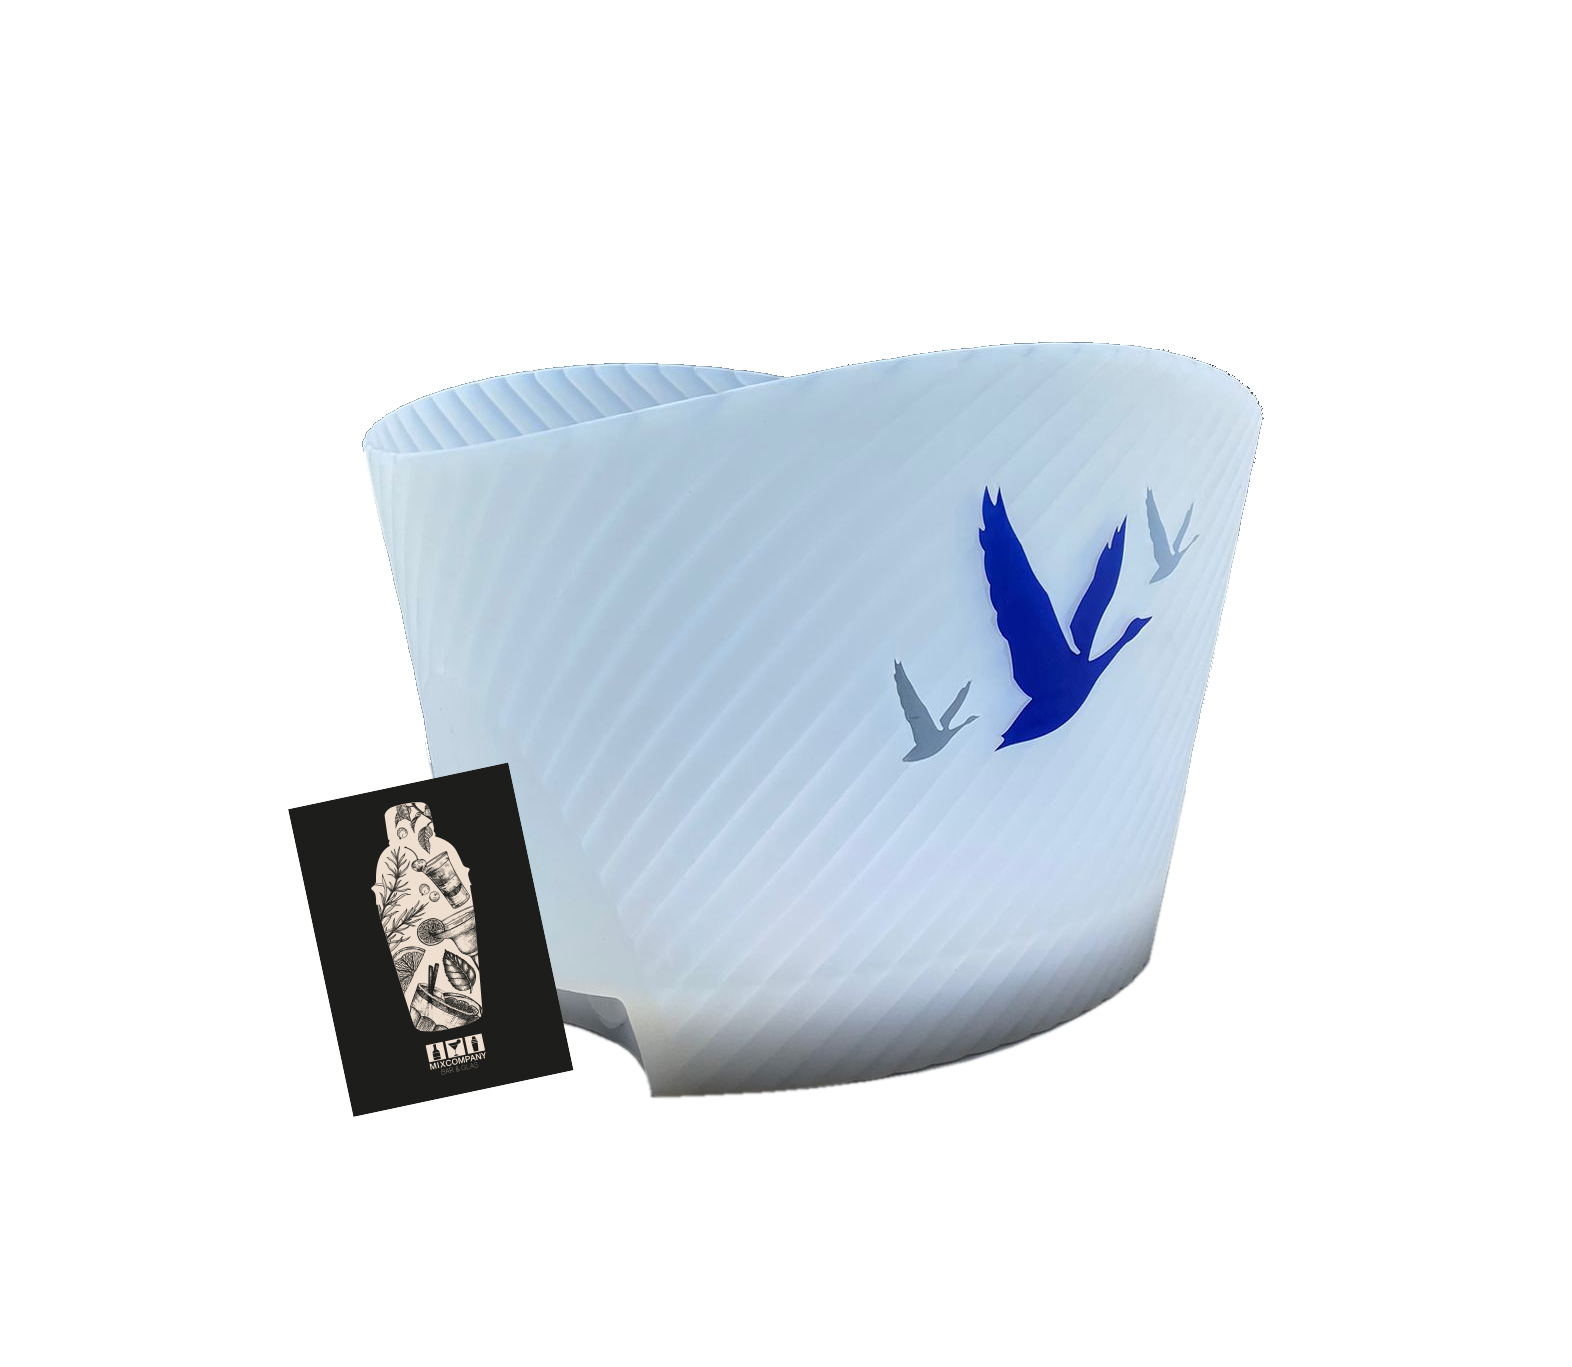 Grey Goose LED Kühler Flaschenkühler Eiskühler Getränkekühler Bar Farbe: Weiß mit blauer Schrift Material: Silikon 